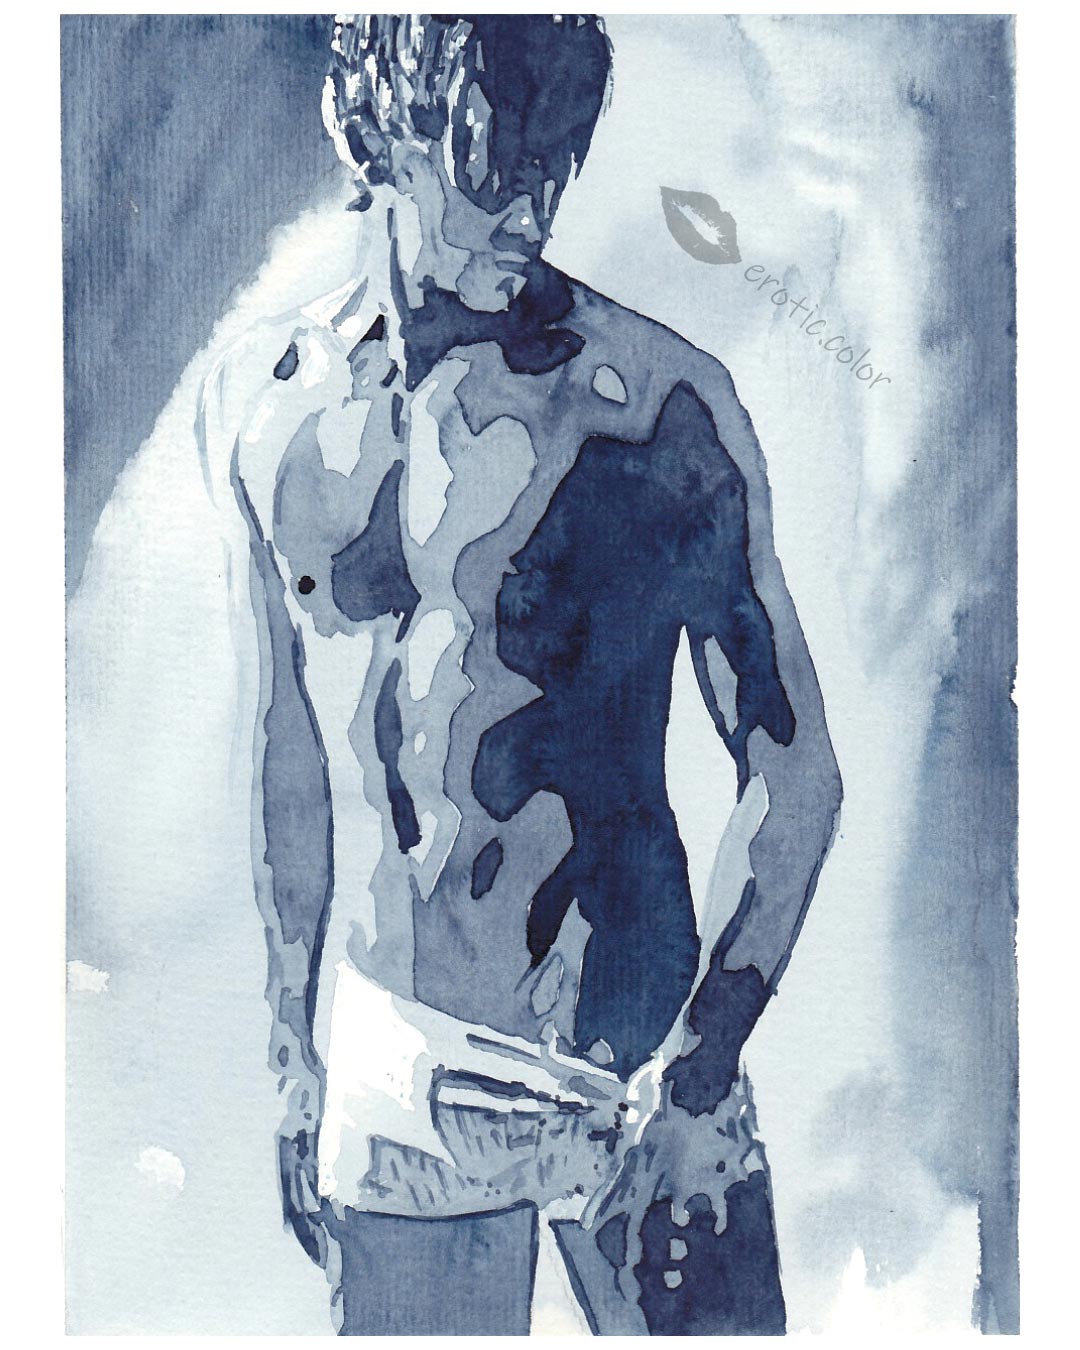 Hot Boy Watercolor